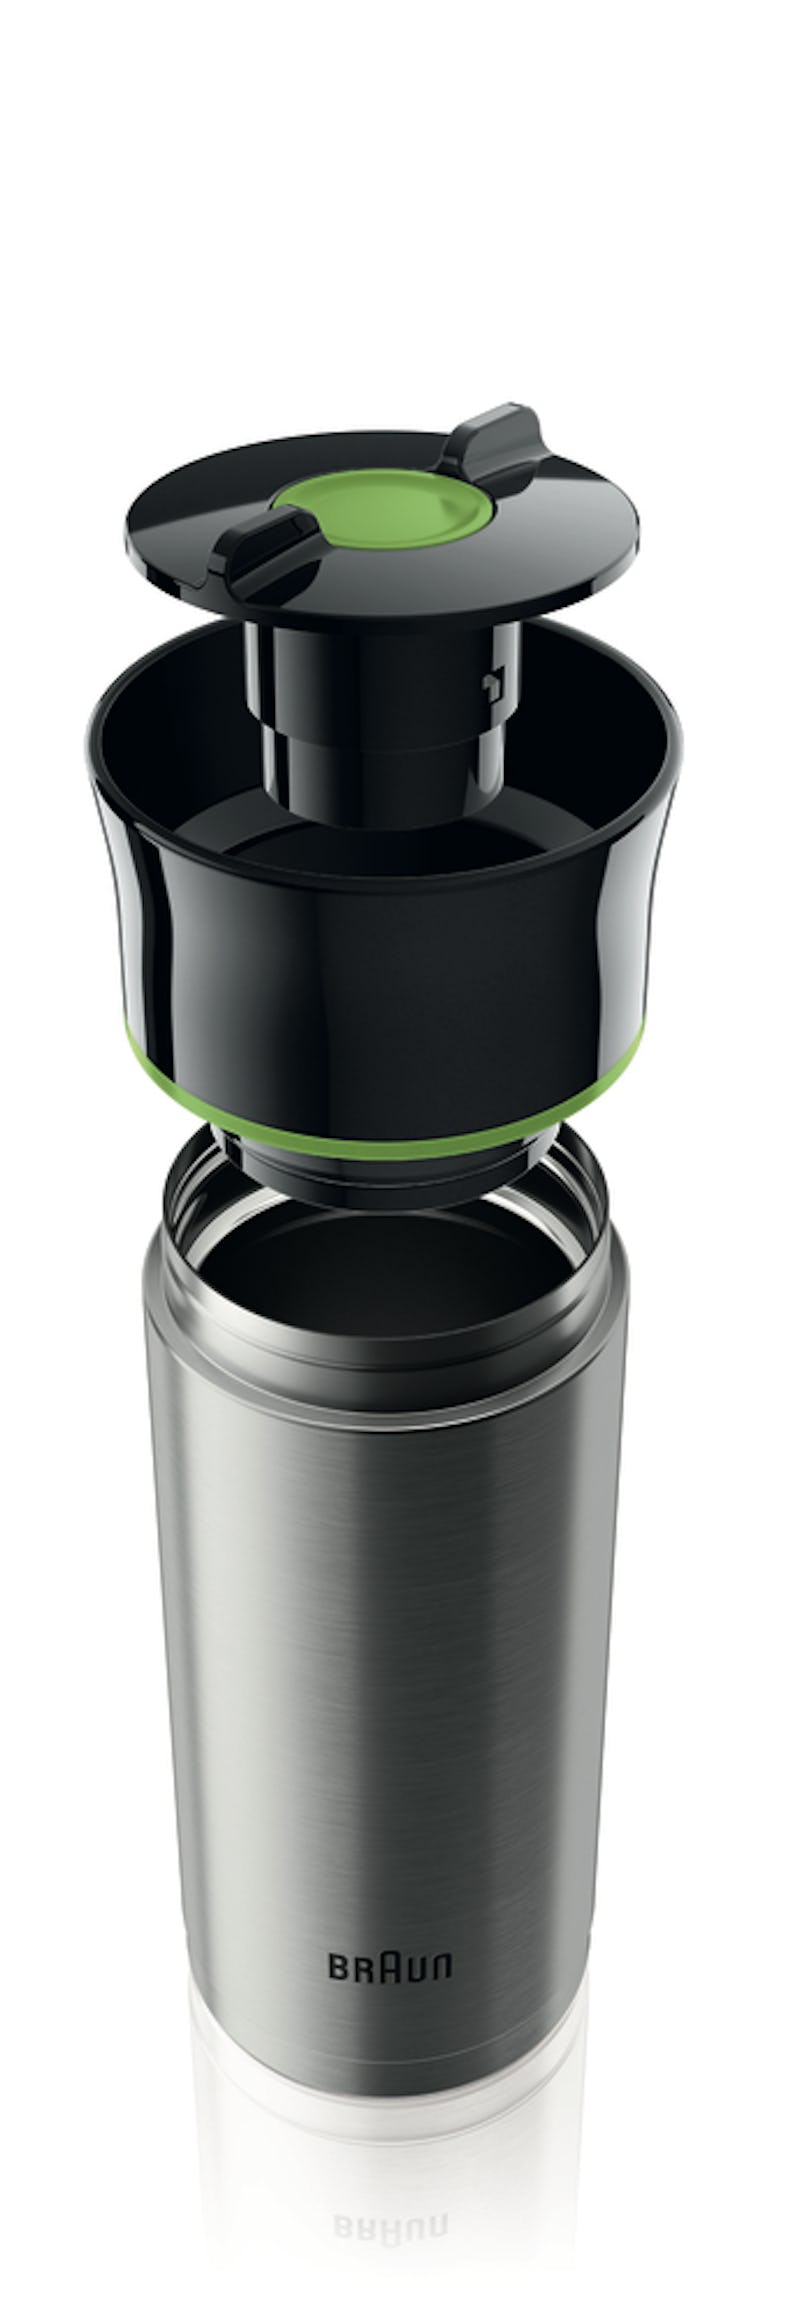 Braun Filterkaffeemaschine KF 7020, 12 Tassen-Aroma-Kanne | METRO Marktplatz